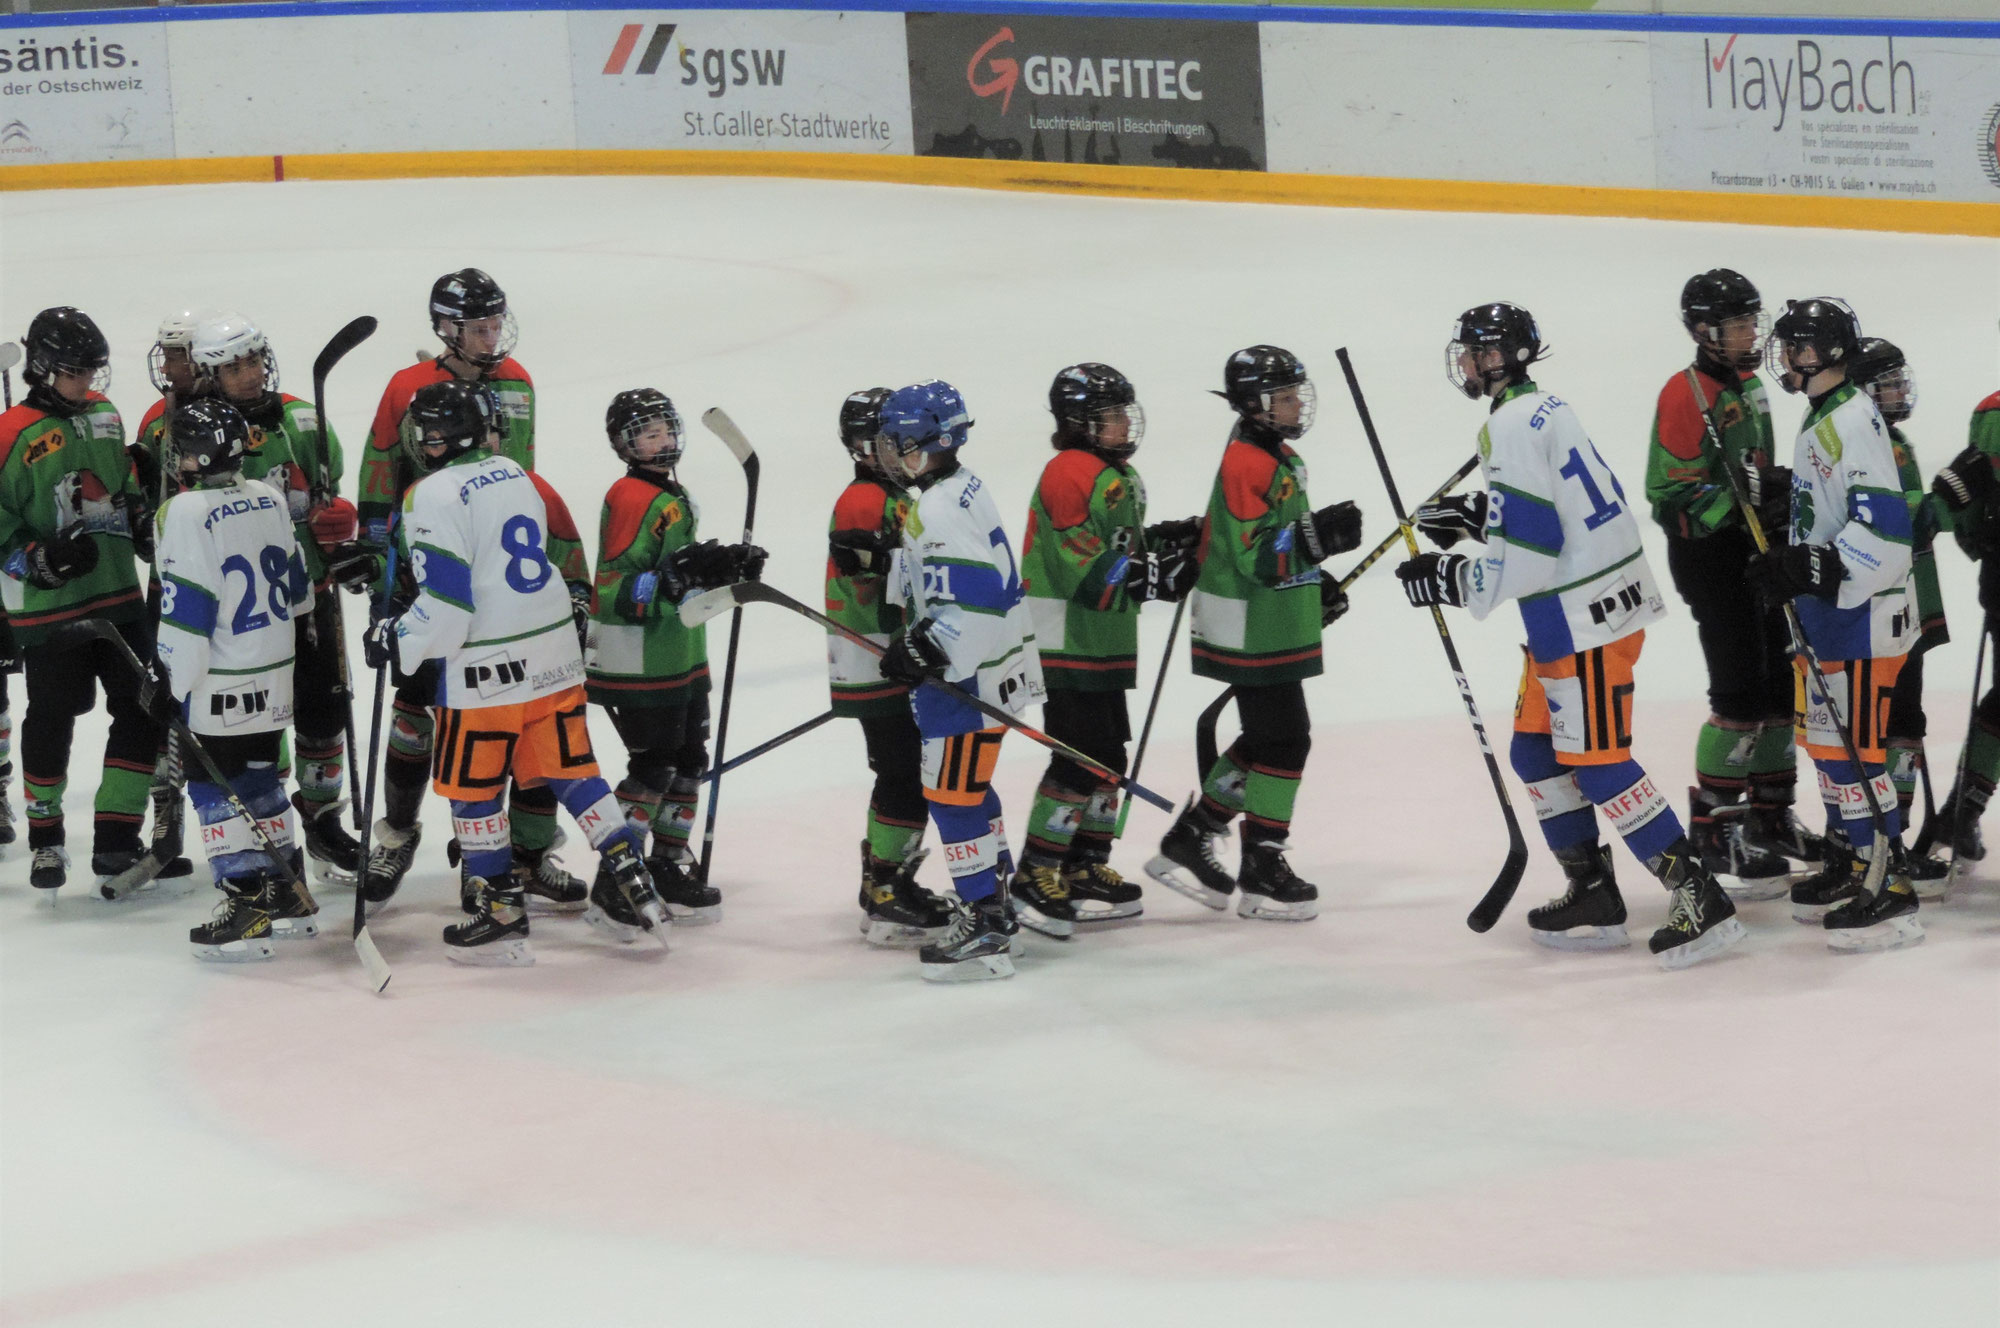 Grossartiger Auswärtssieg vom Team SCW U15 gegen den HC Eisbären St. Gallen